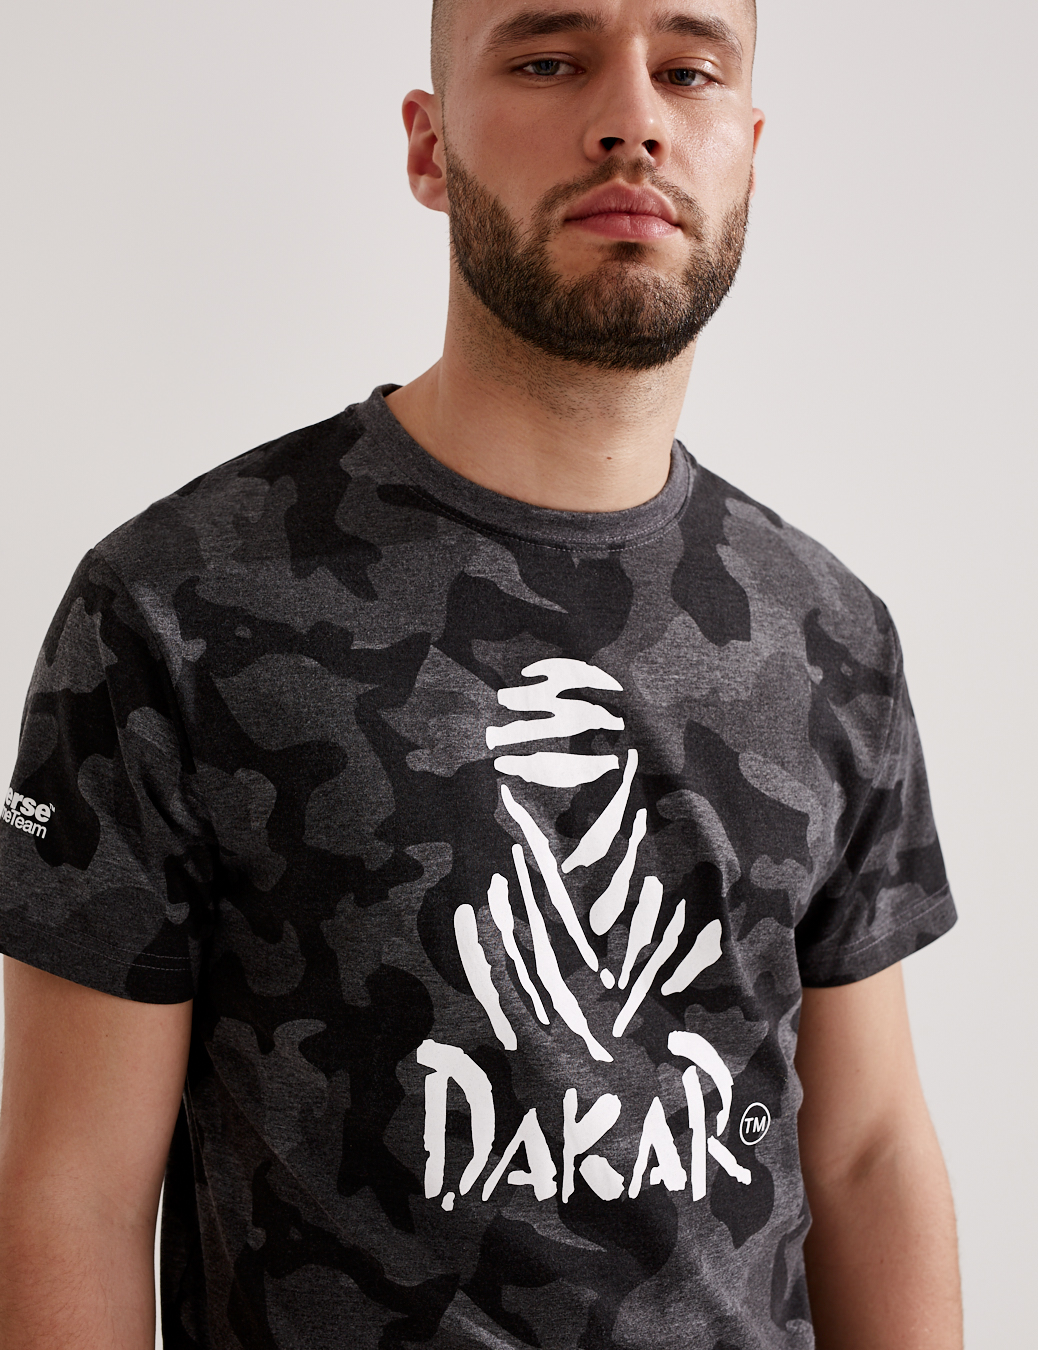 T-Shirt Dakar Logo Camouflage - black